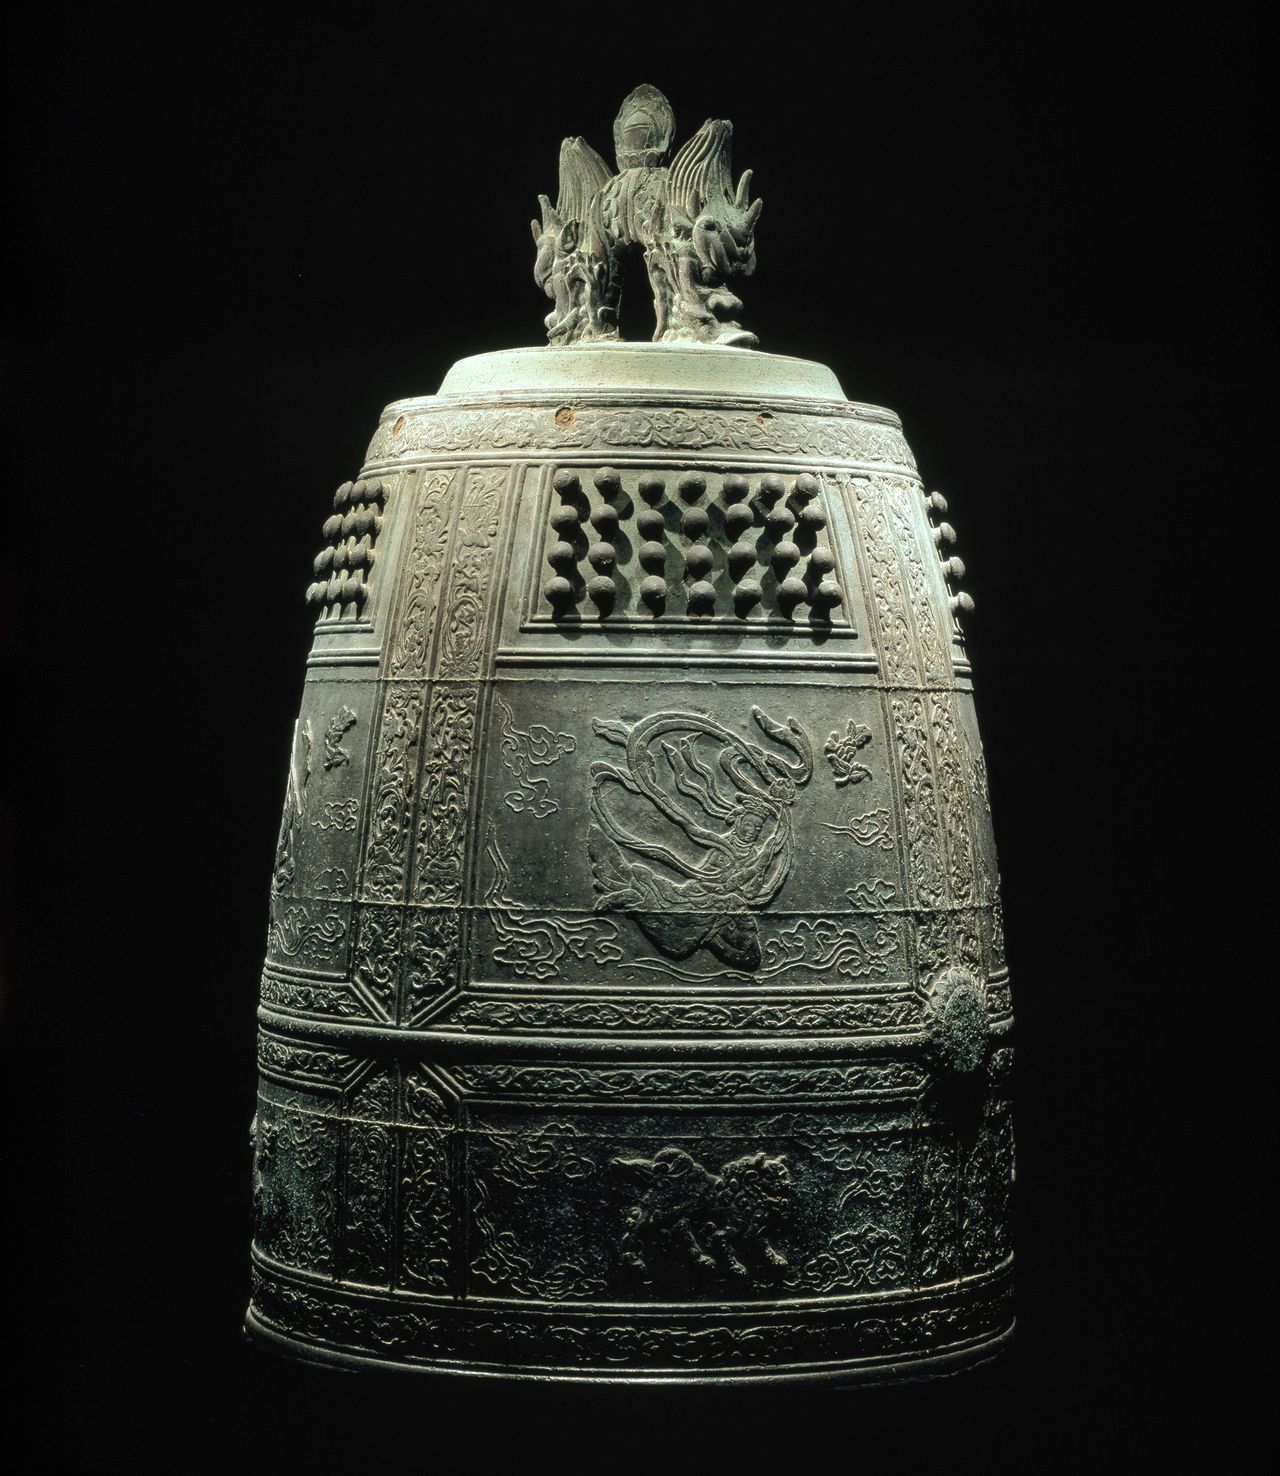 Первый храмовый колокол (национальное достояние) хранится и экспонируется в музее. Его высота составляет 199 см, диаметр – 123 см, вес – около 2 тонн (фотография предоставлена Бёдоин)